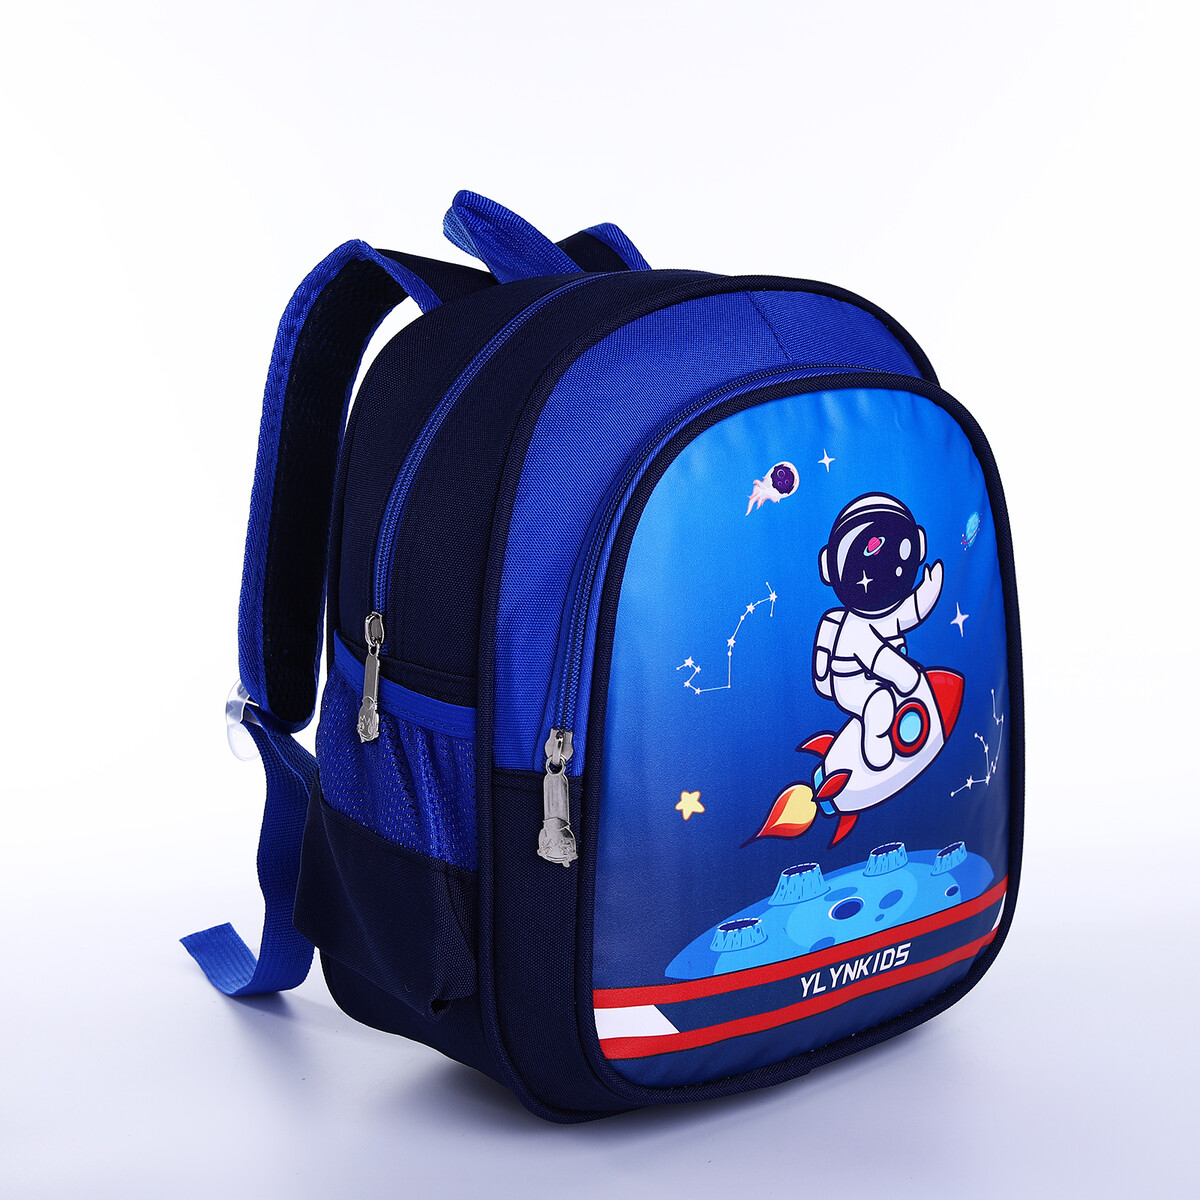 Рюкзак детский на молнии, 3 наружных кармана, цвет синий рюкзак на молнии 3 наружных кармана малиновый